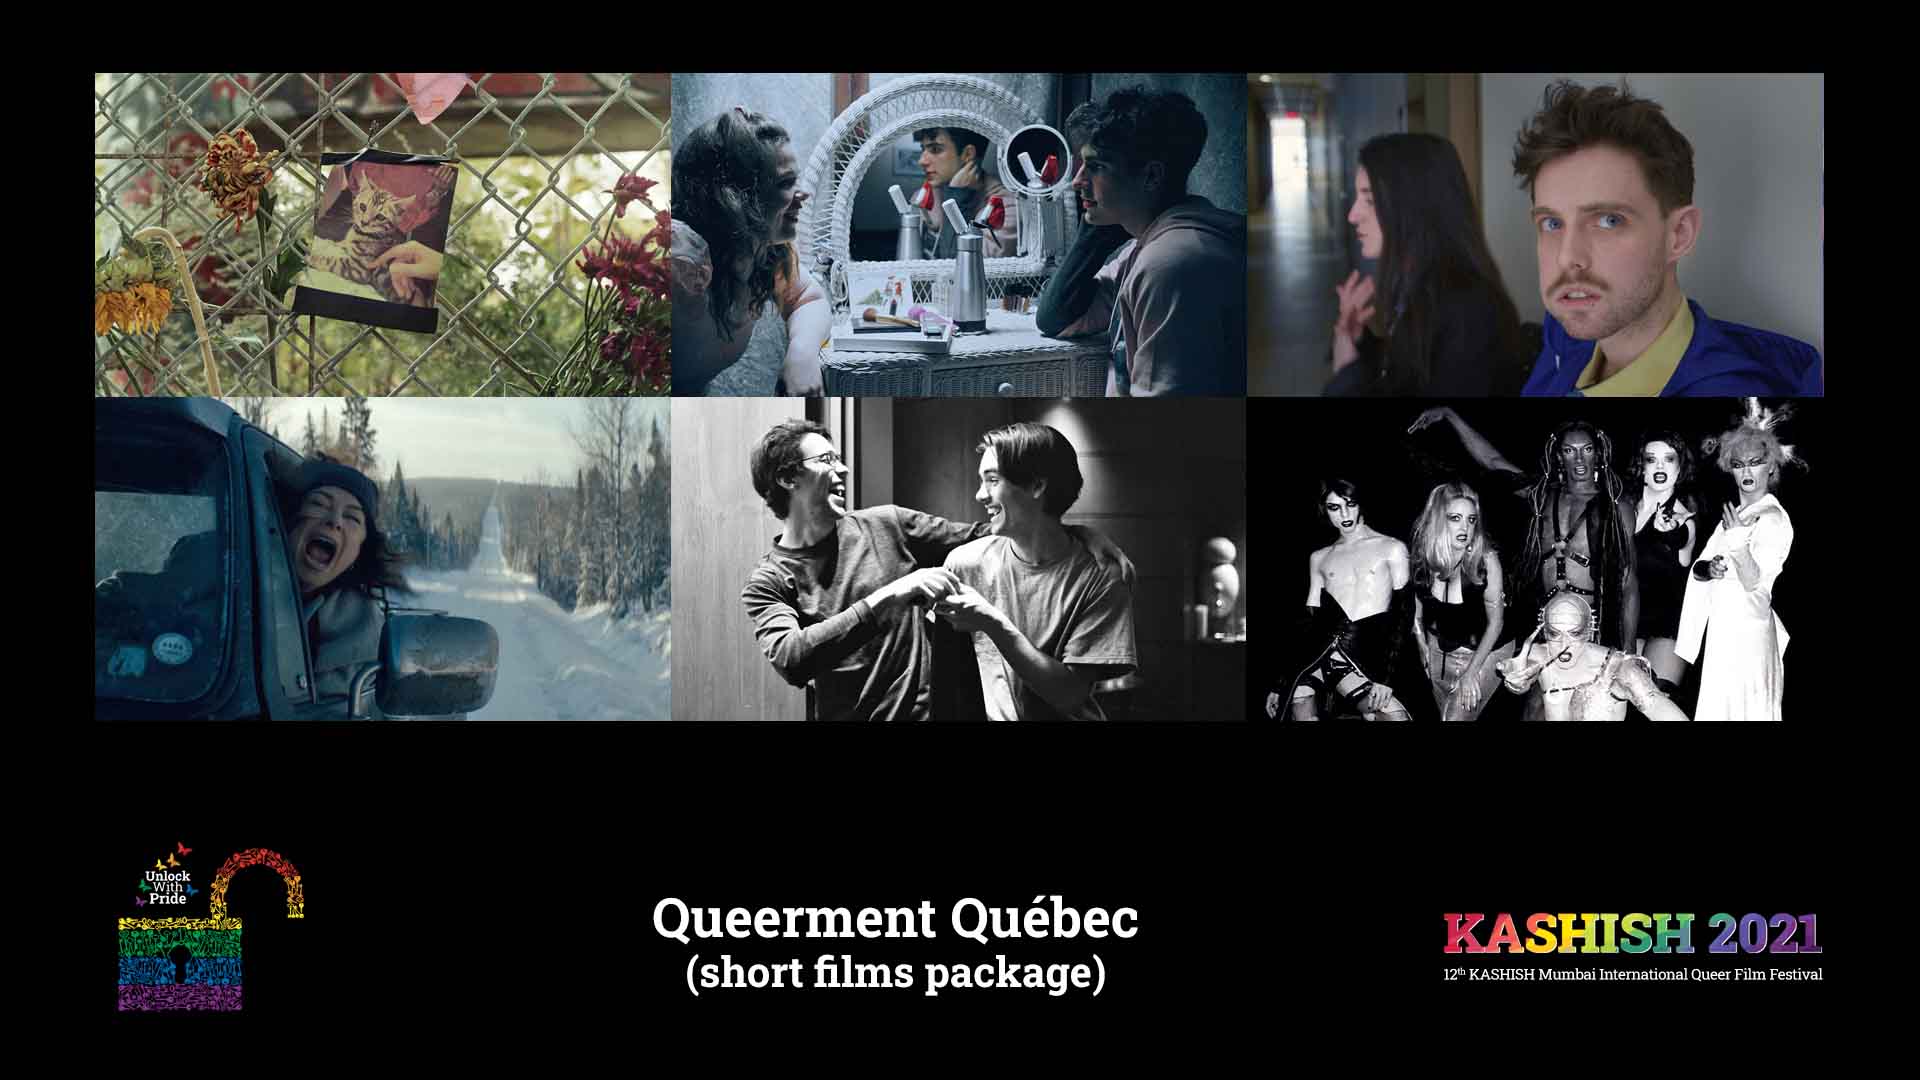 QUEERMENT QUÉBEC - KASHISH Mumbai International Queer Film Festival